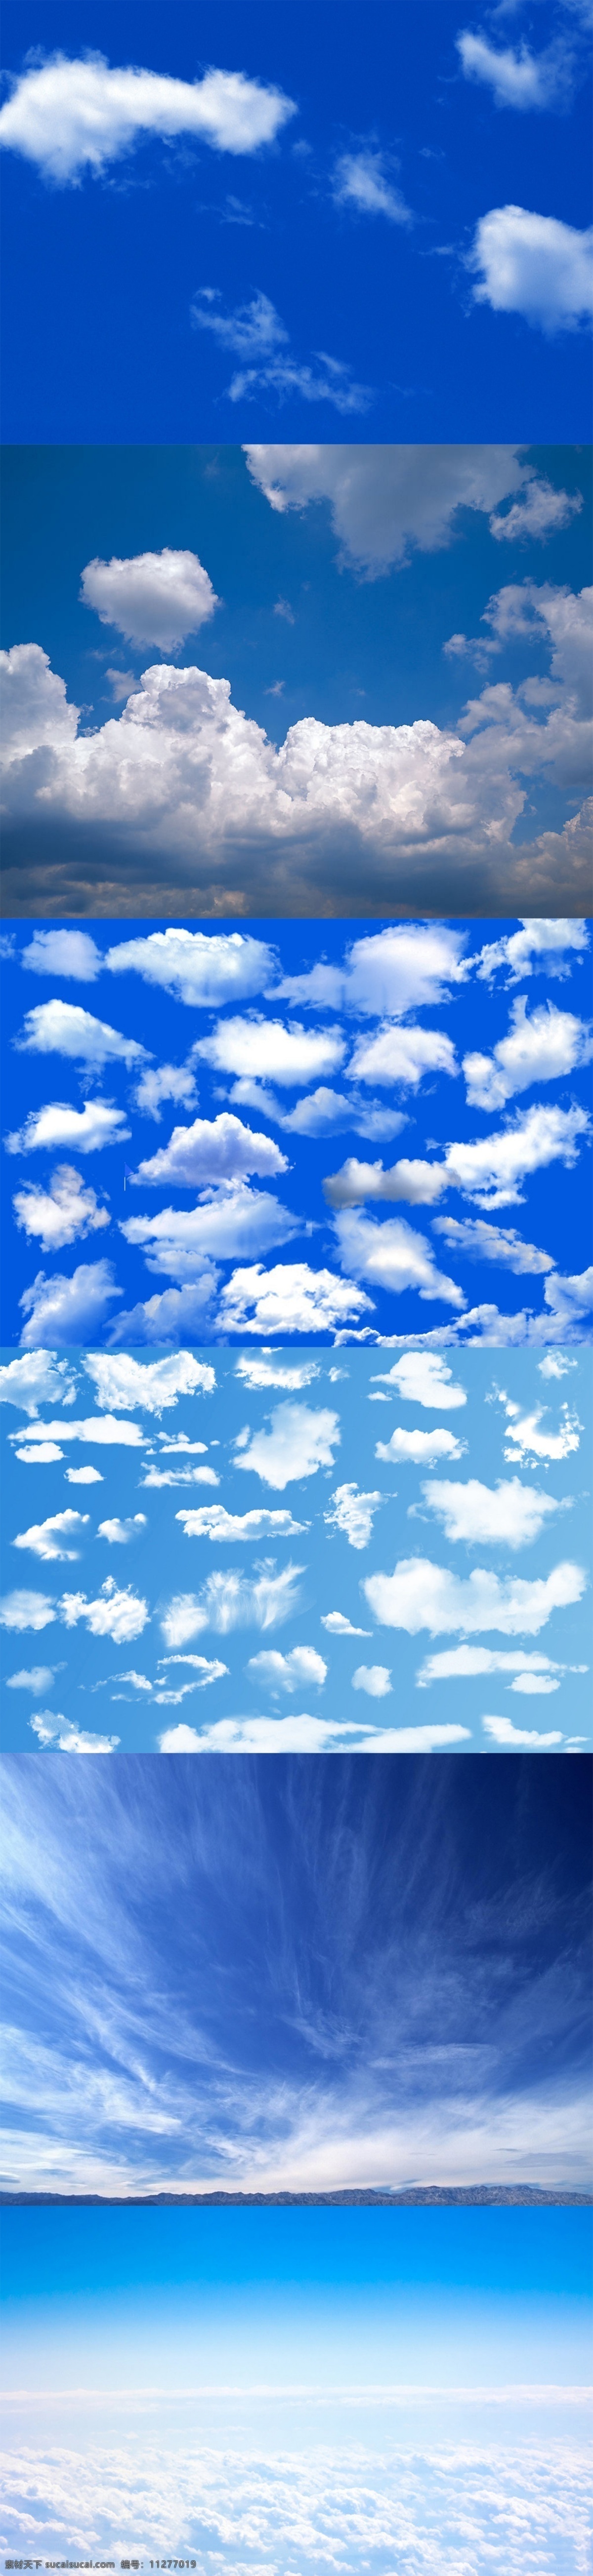 晴空 云彩 天空 天猫 背景 淘宝背景图片 云朵 蓝天 婚纱背景 白云 天空背景 美丽蓝天风景 蓝天白云 海面 上 自然景观 蓝色